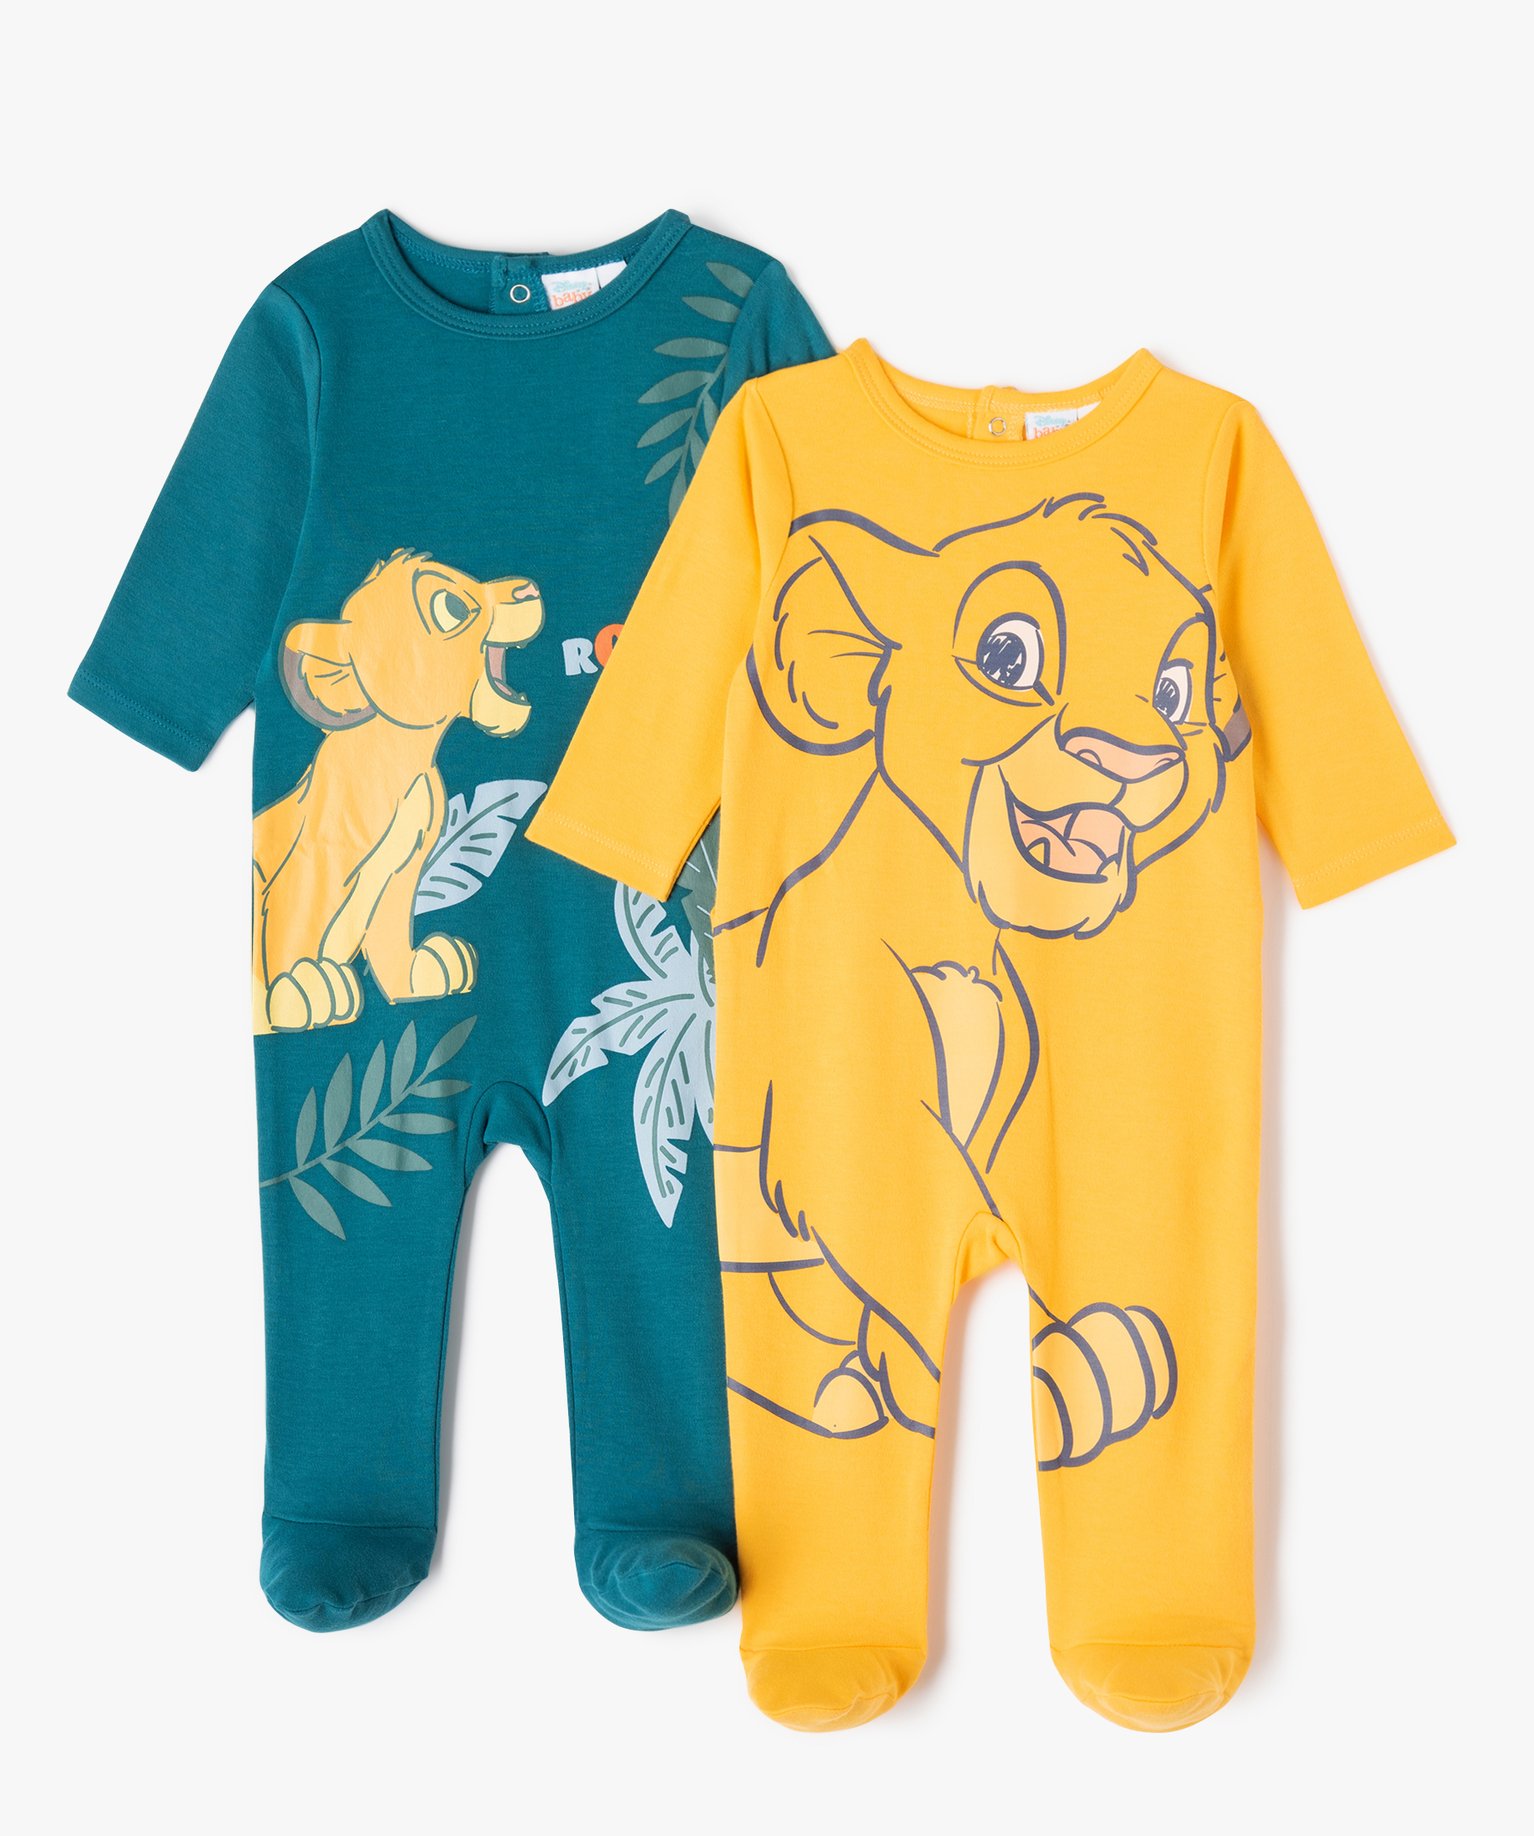 Pyjama dors-bien en jersey de coton à pont-dos bébé (lot de 2) - Disney - 1M - jaune - DISNEY BABY